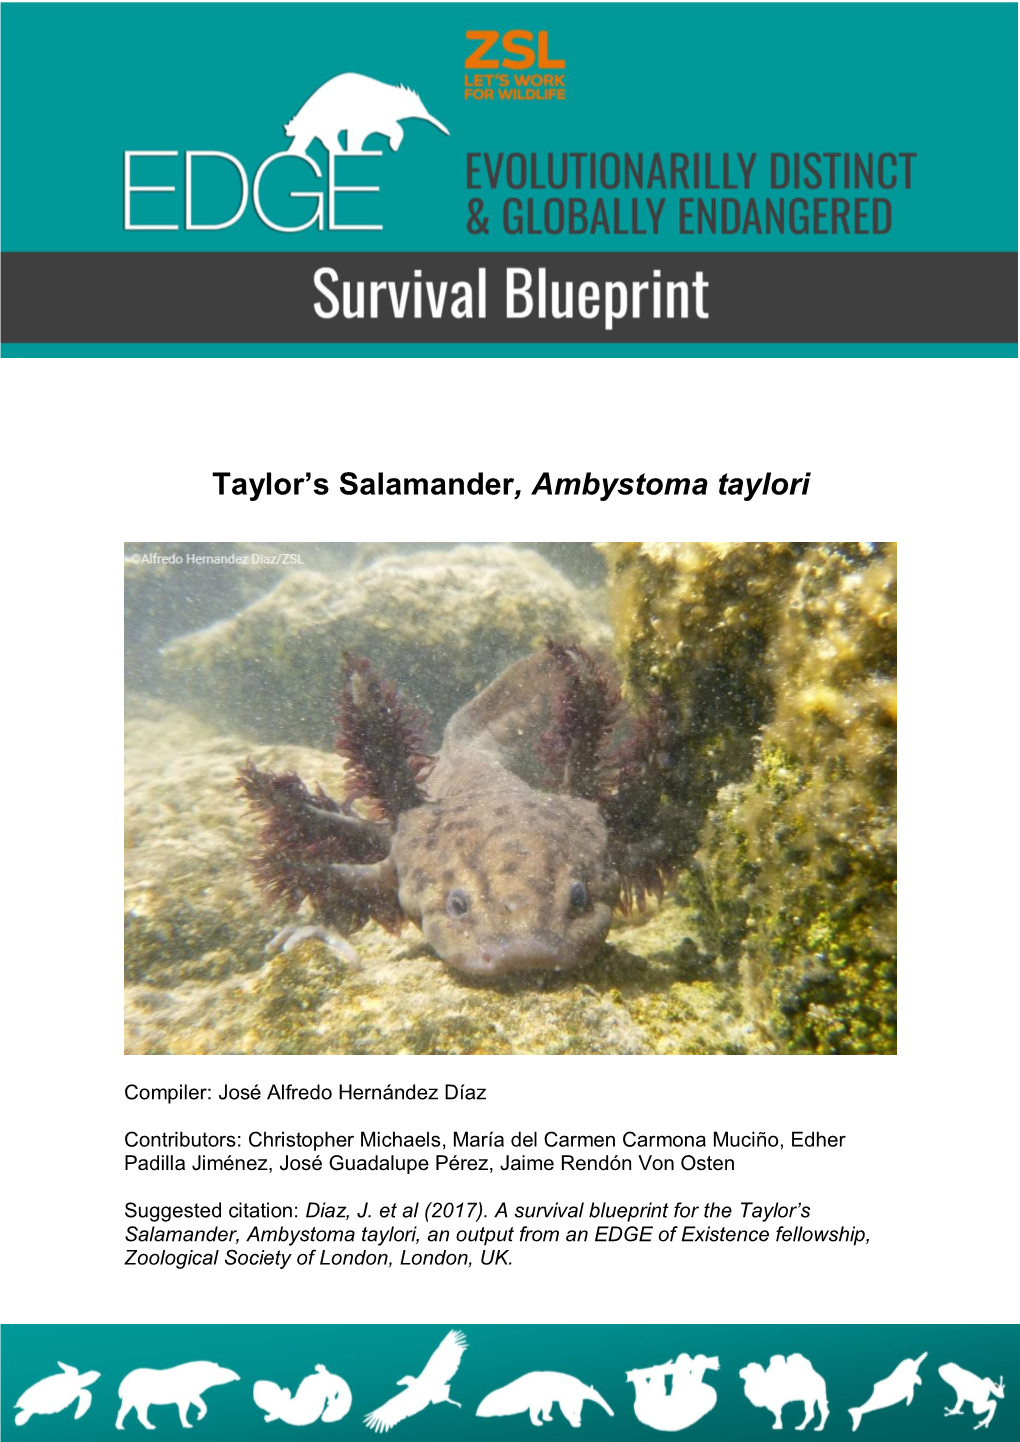 Taylor's Salamander, Ambystoma Taylori